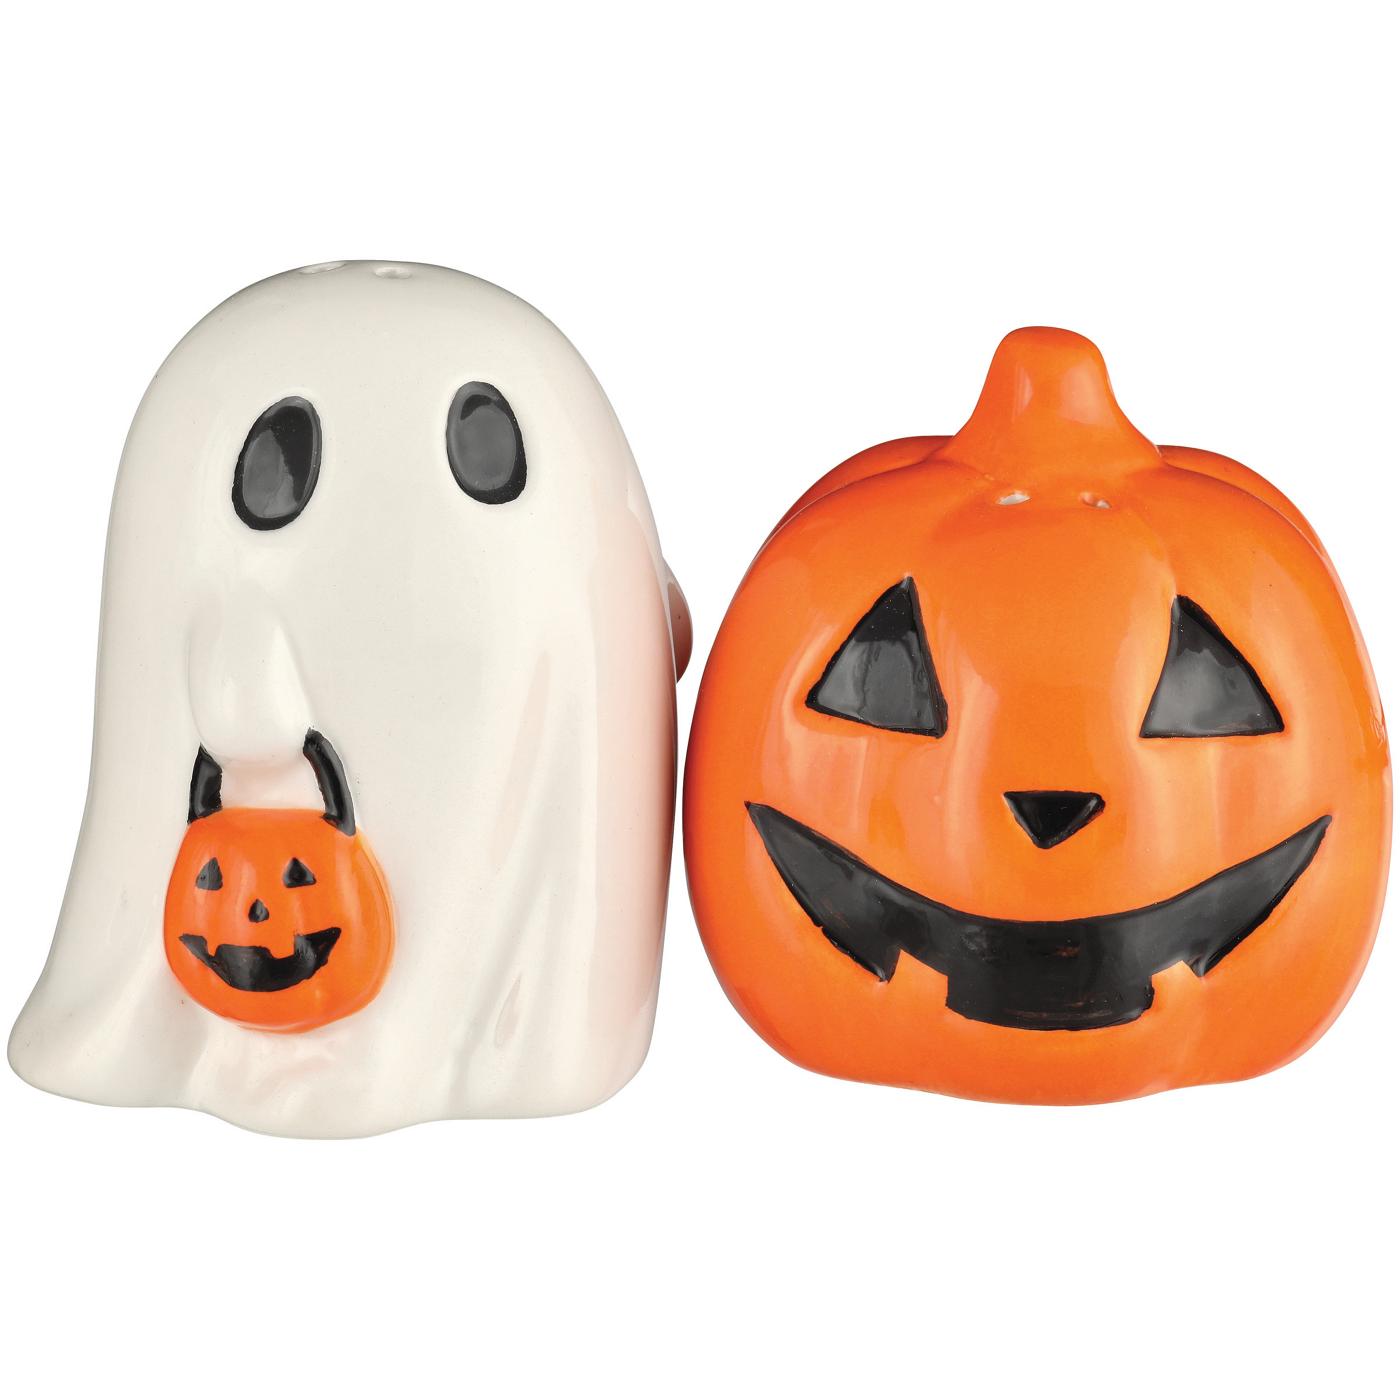 Destination Holiday Costumed Ghost & Jack-o'-lantern Ceramic Salt & Pepper Shaker Set; image 2 of 2